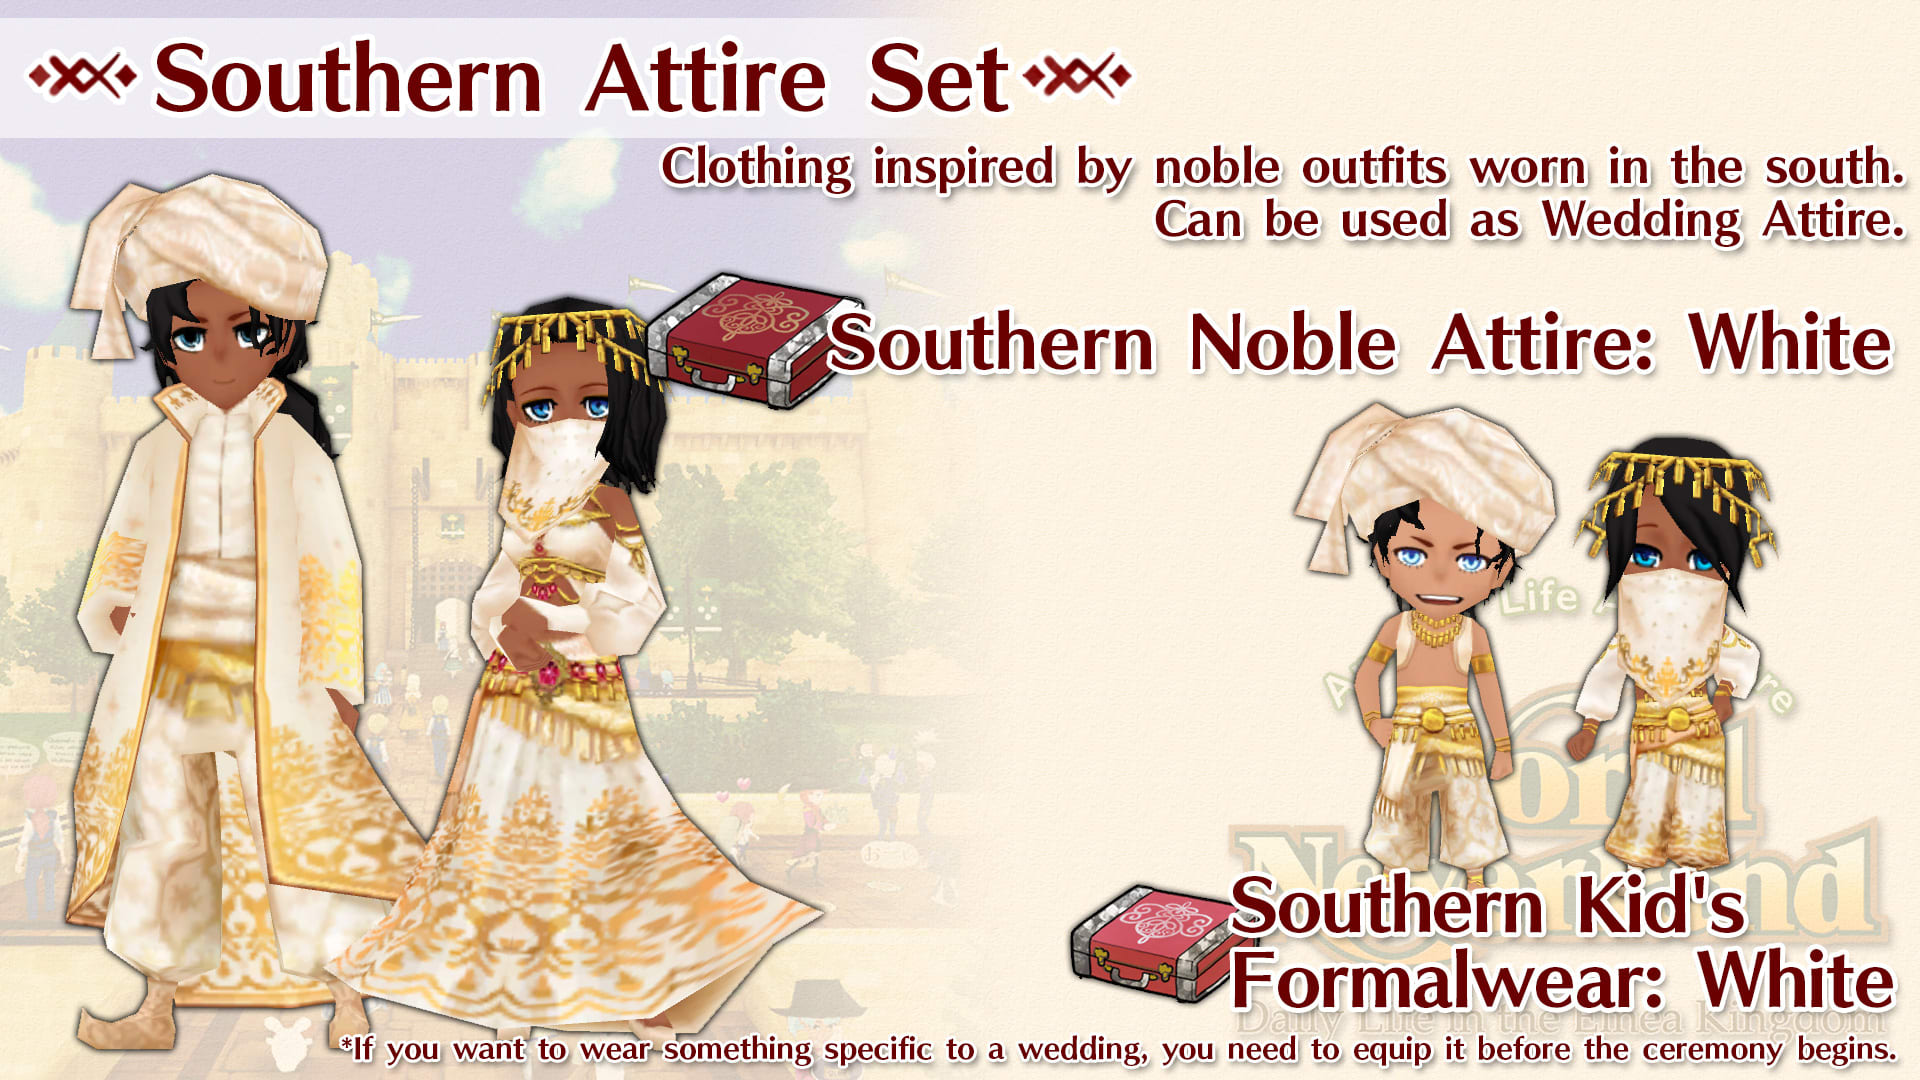 Southern Attire Set